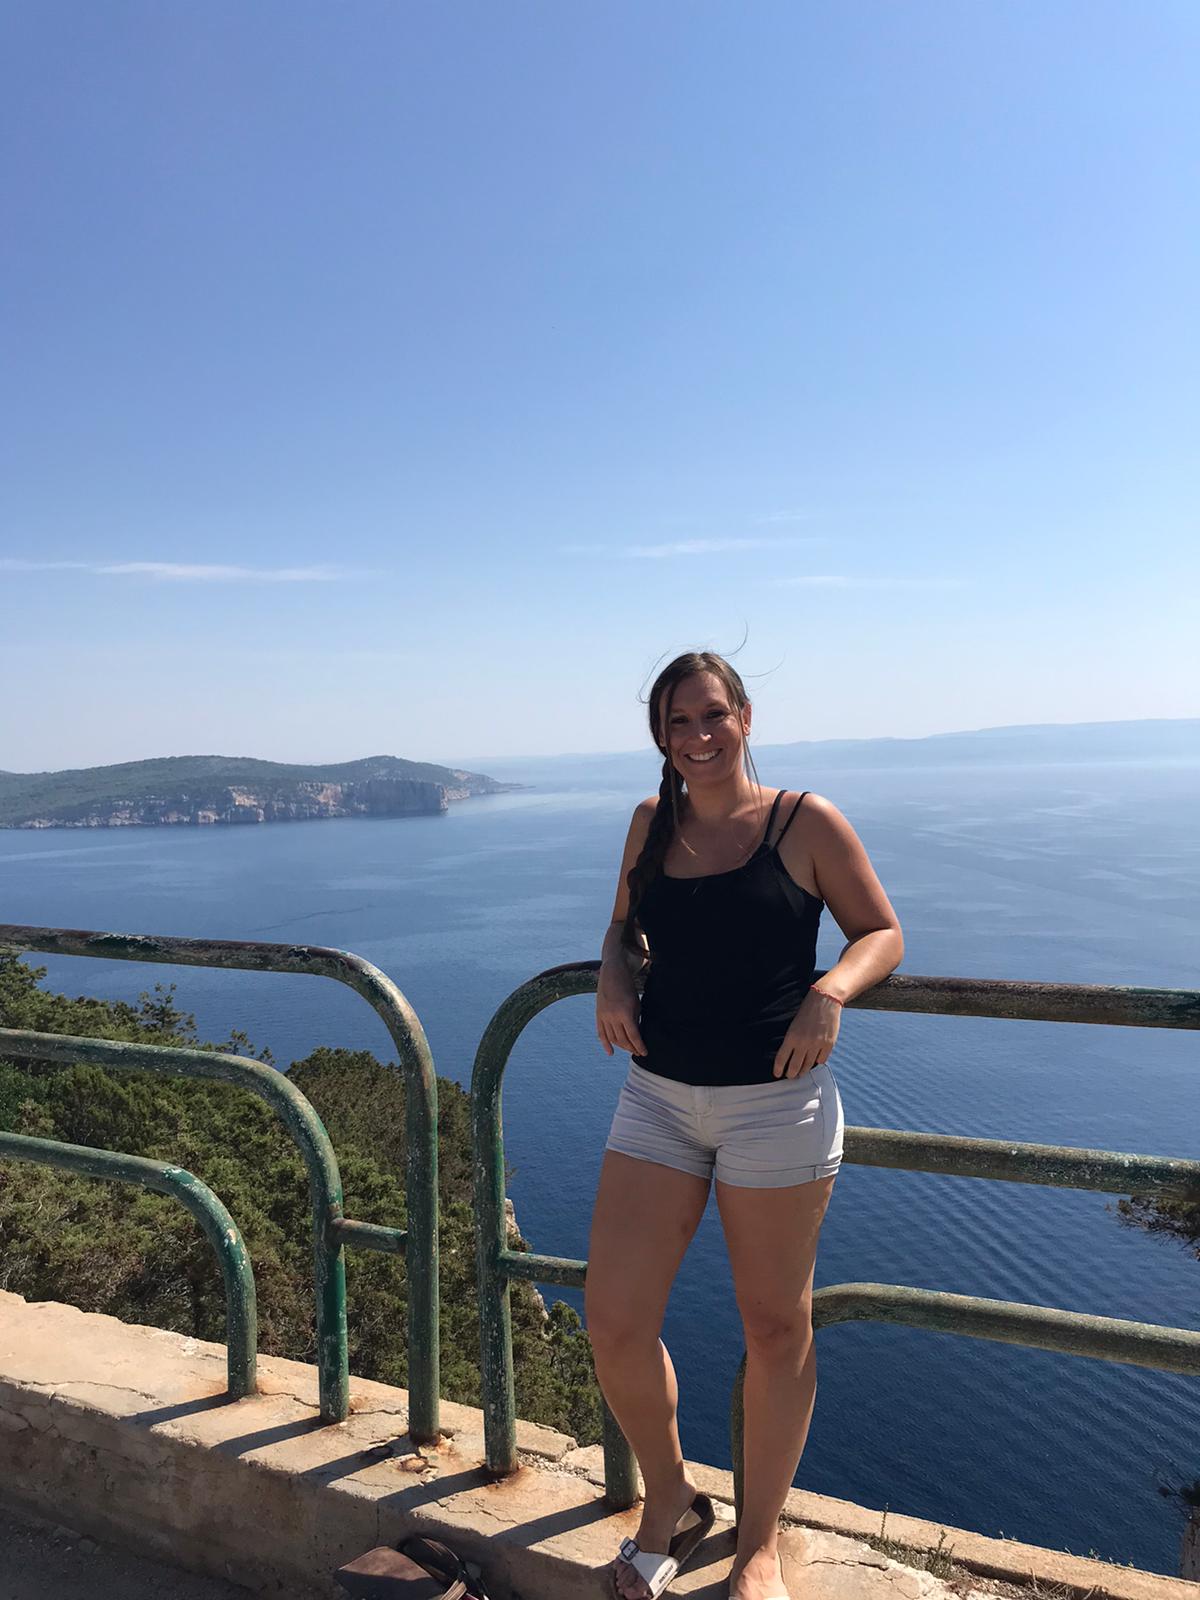 ALT "photo de moi en vacance en Sardaigne, avec une vue sur la mer"